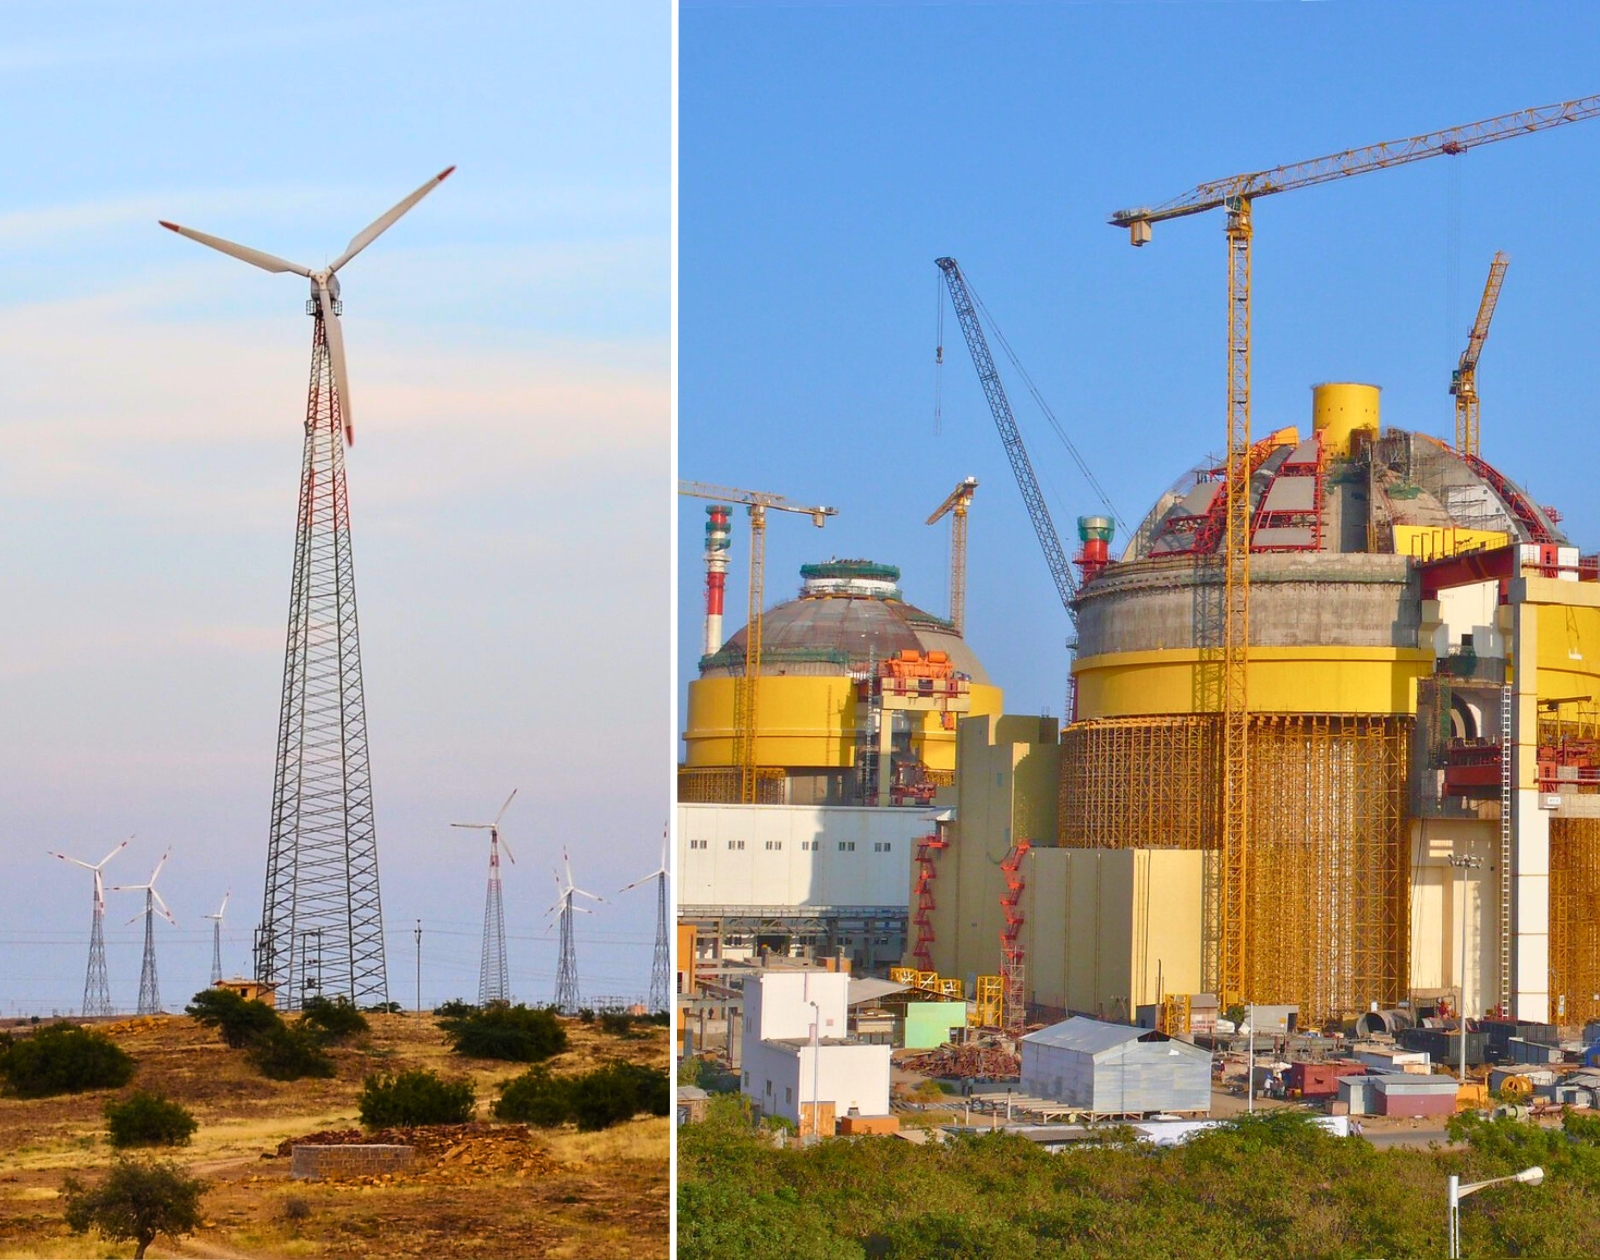 Le pays le plus peuplé du monde compte sur le duo nucléaire et renouvelables pour atteindre la neutralité carbone